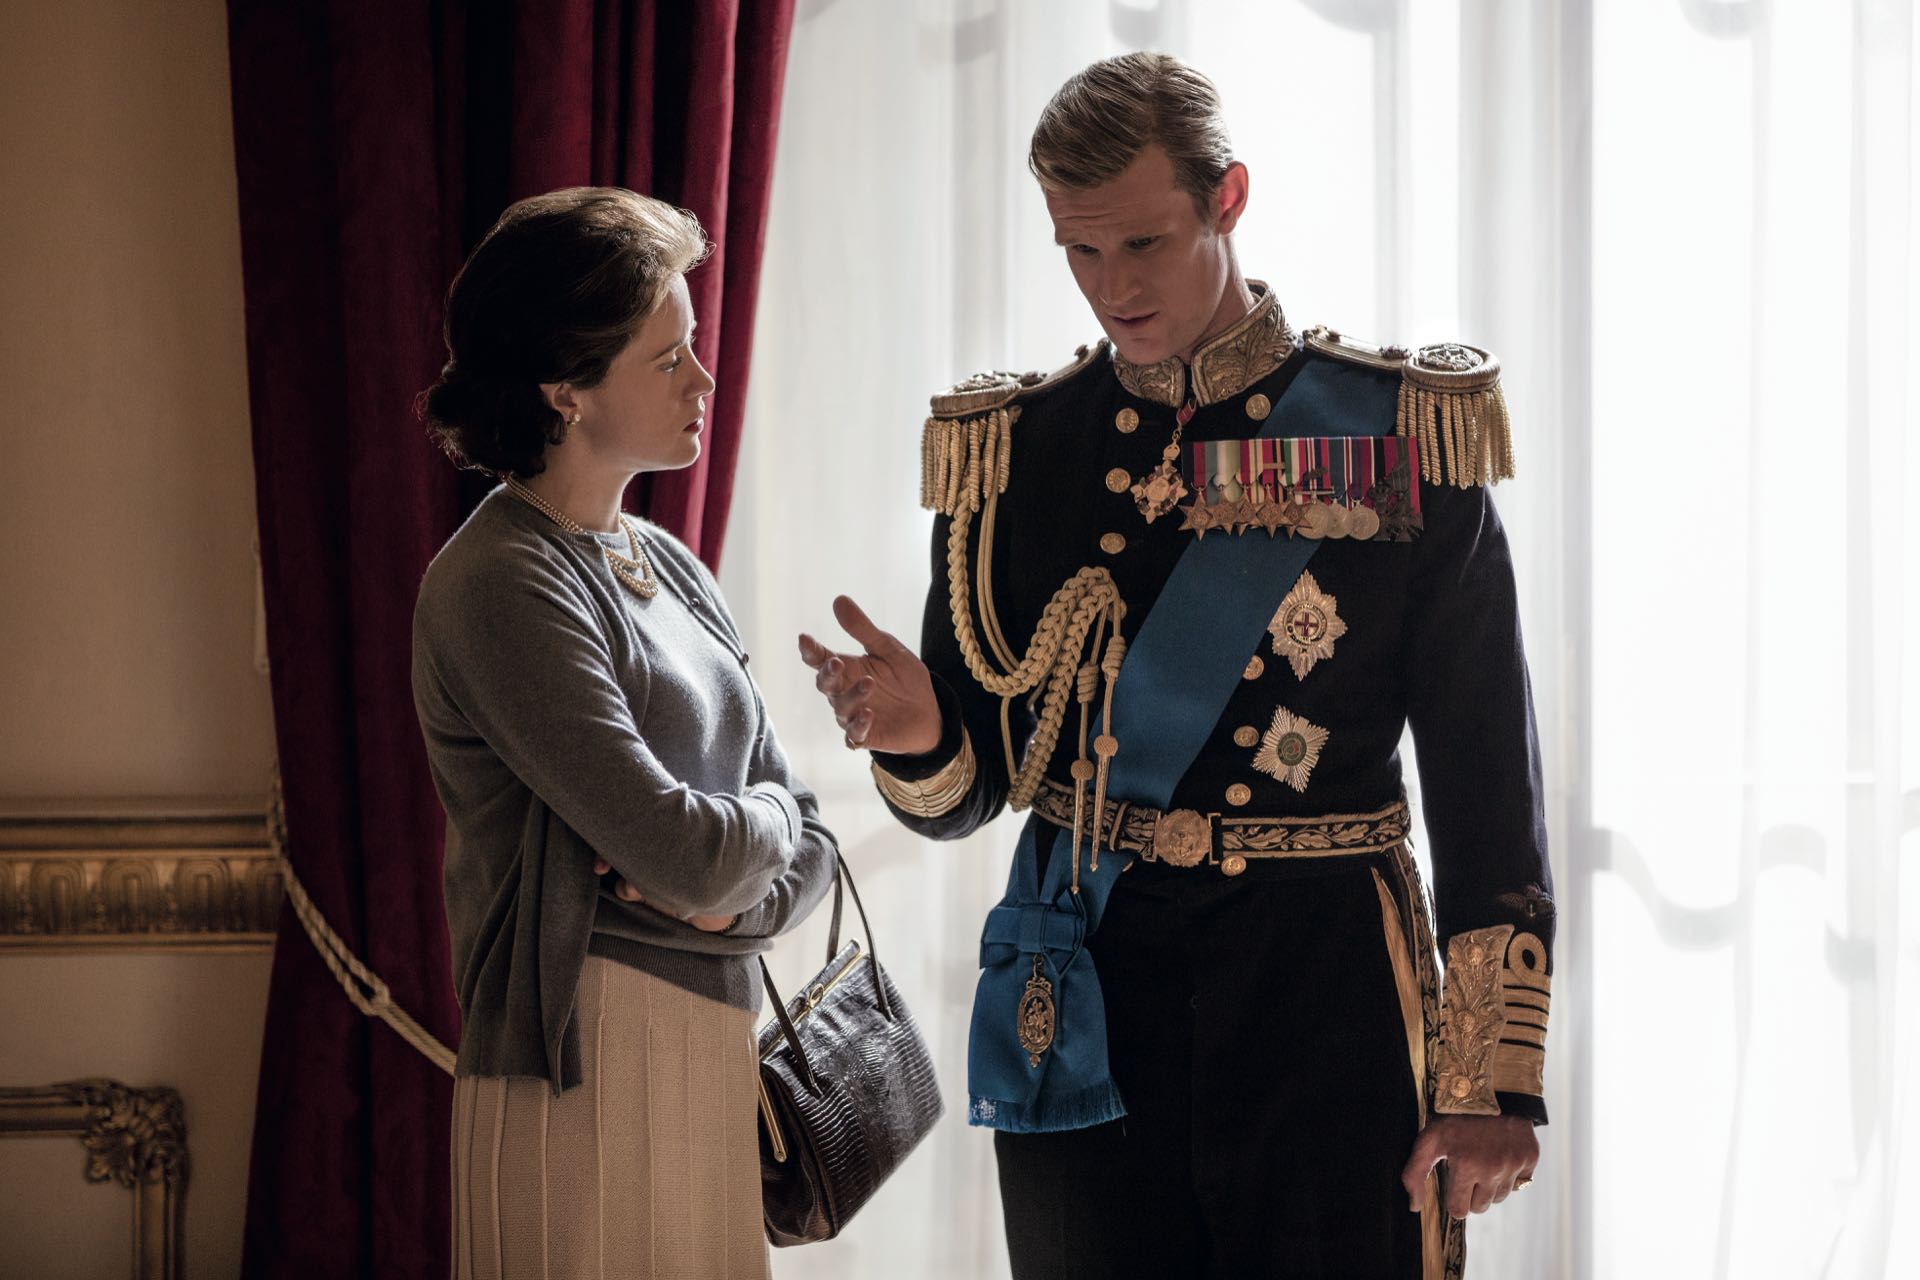 La serie The Crown, de Netflix, retrata la vida de la reina Isabel II del Reino Unido (91), interpretada por Claire Foy. Son casi siete décadas de matrimonio con el príncipe Felipe de Edimburgo (95), interpretado por Matt Smith.